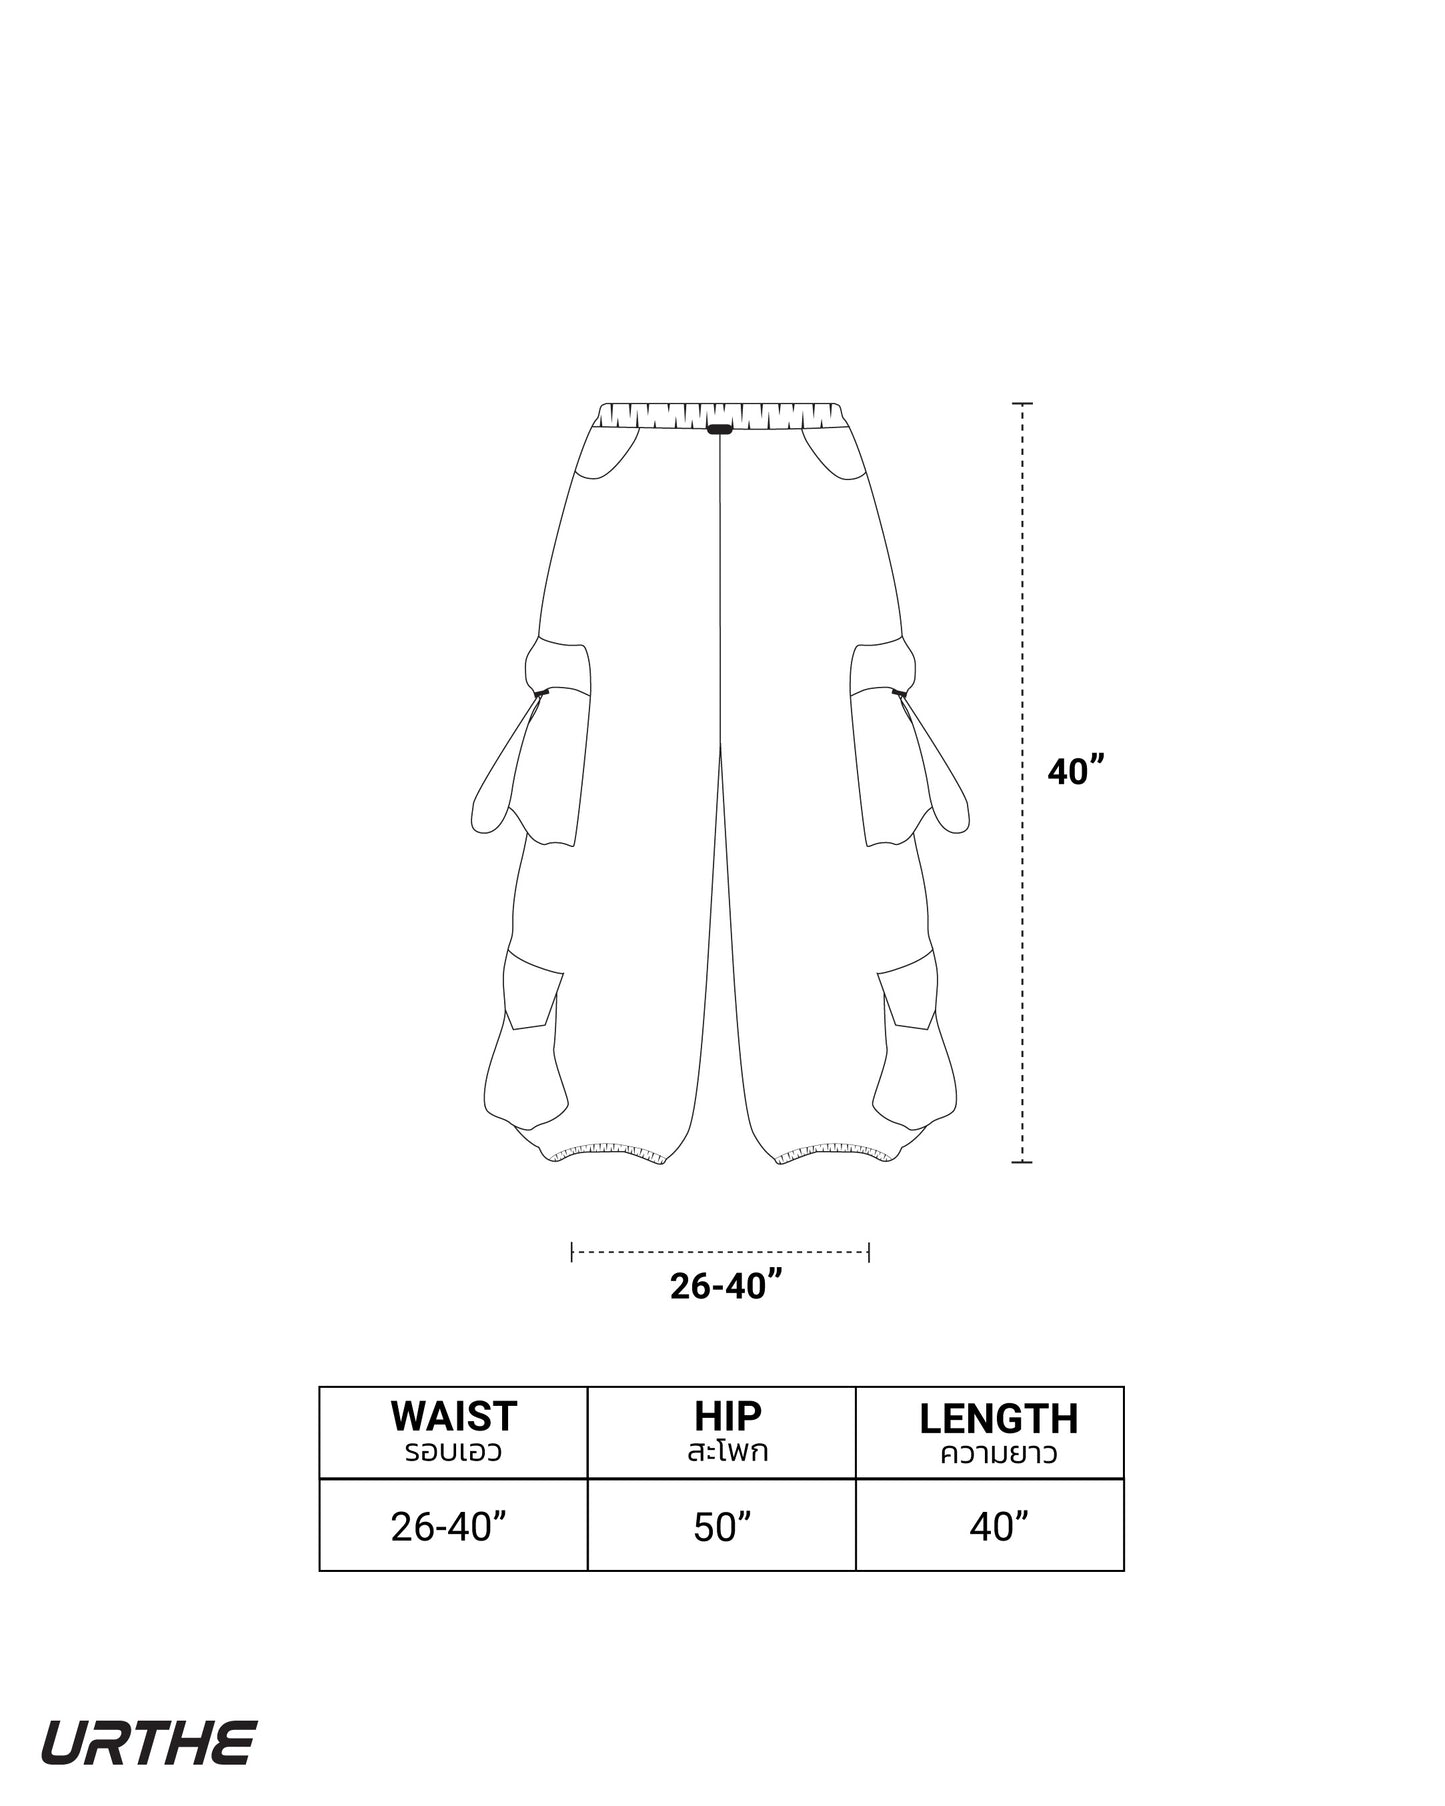 URTHE - กางเกงคาร์โก้ ขายาว กระเป๋า 4 ใบ รุ่น 4P 2.0